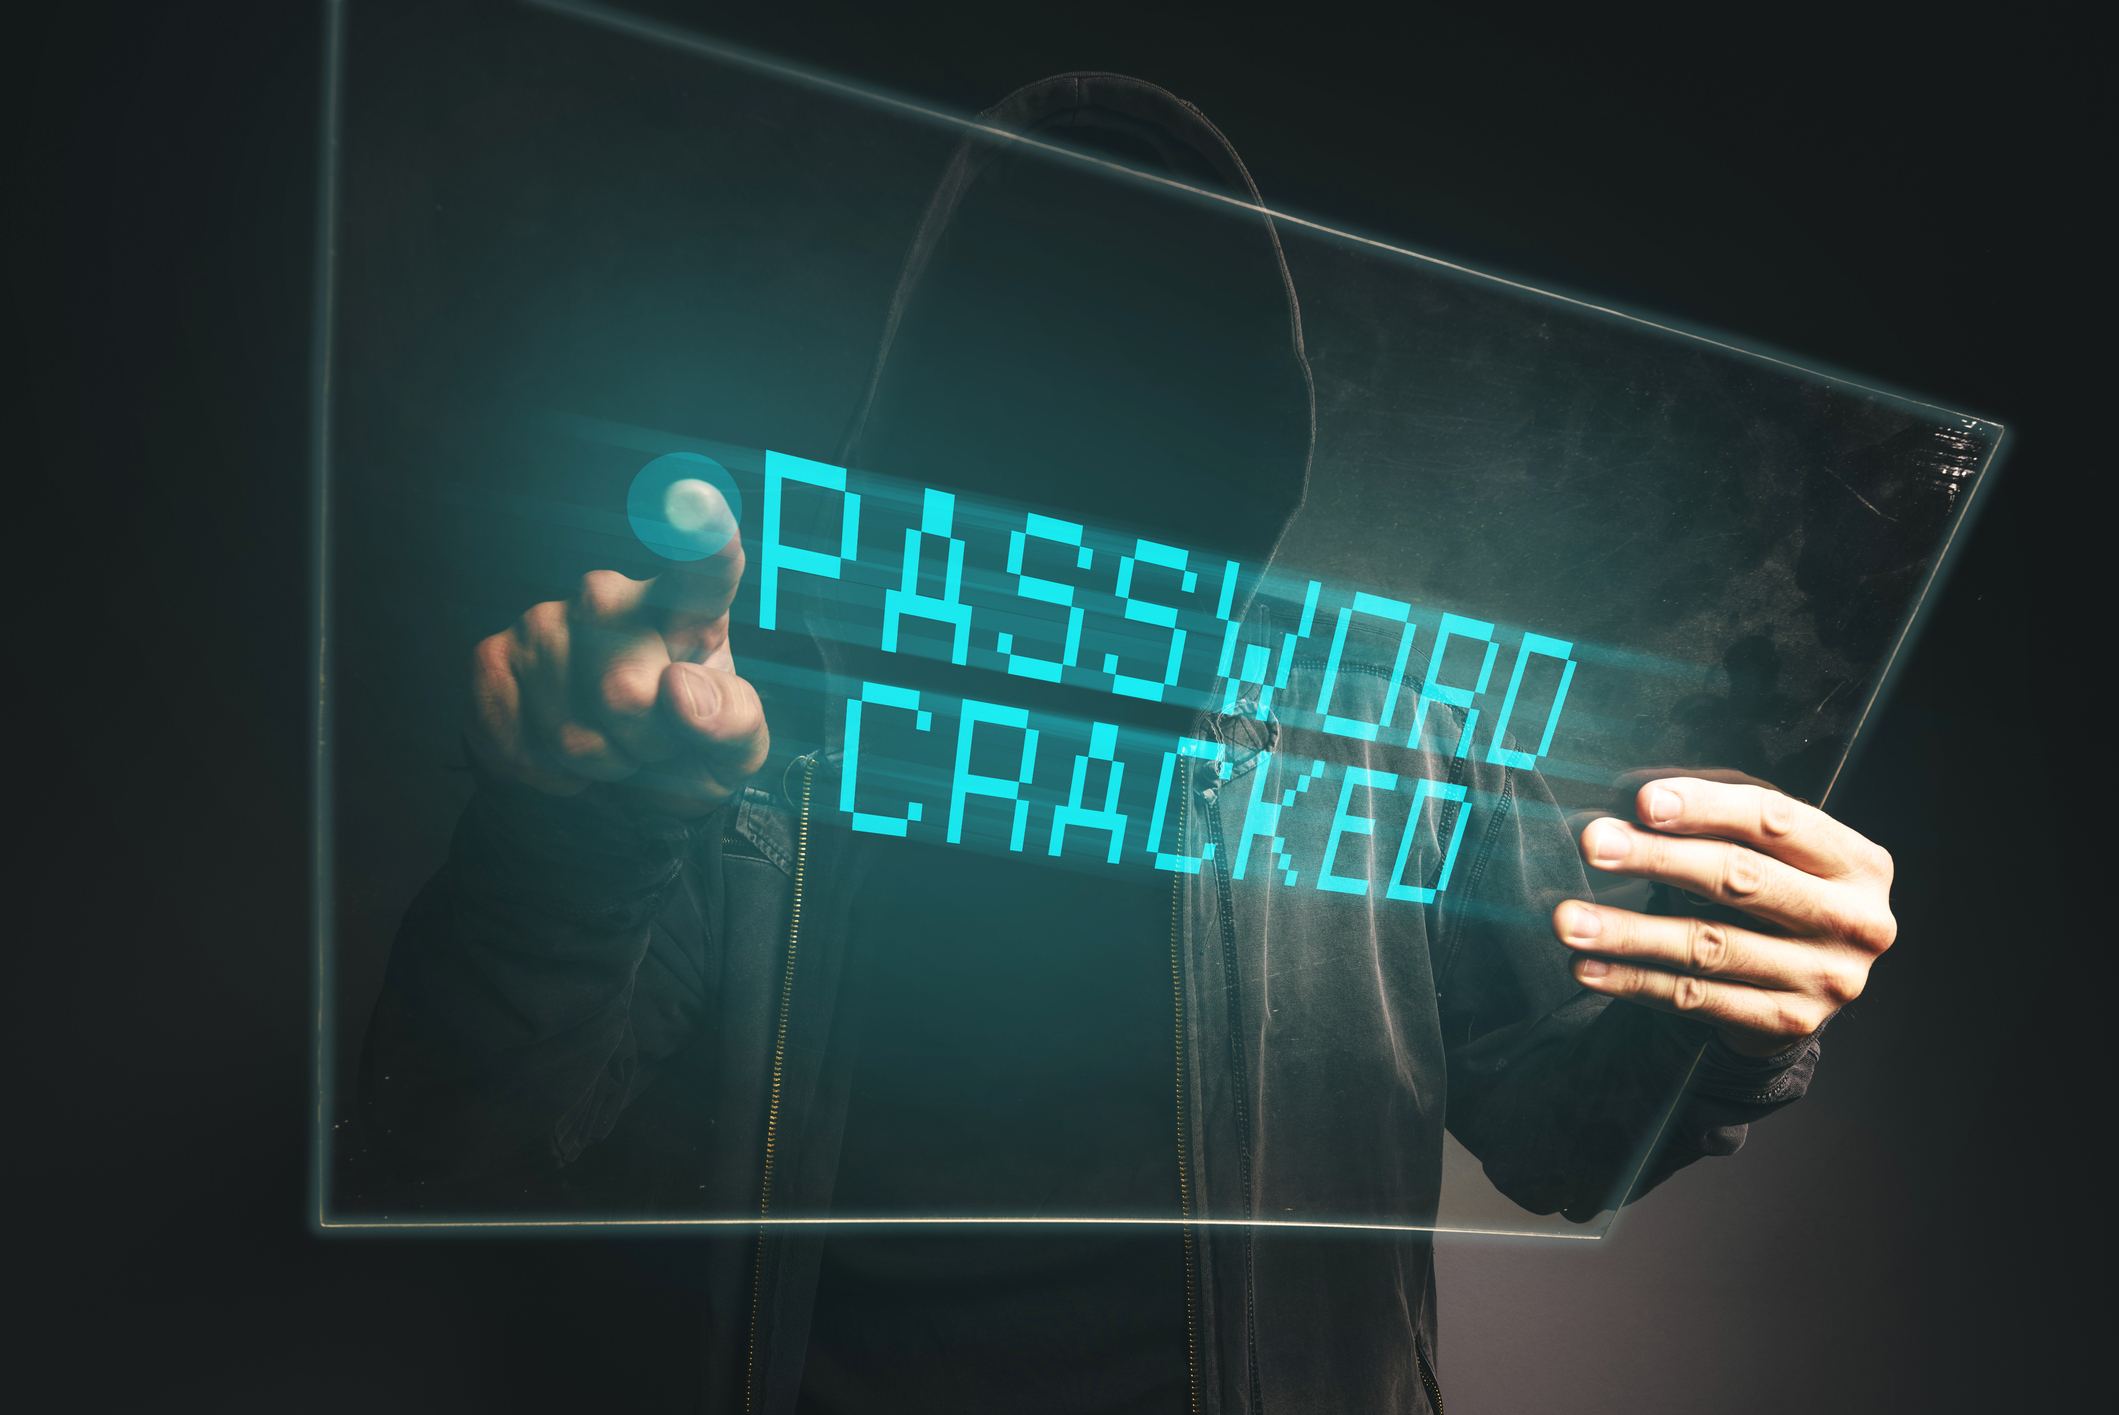 12 Ways To Hack Facebook Account Password 2020 - The Zero Hack